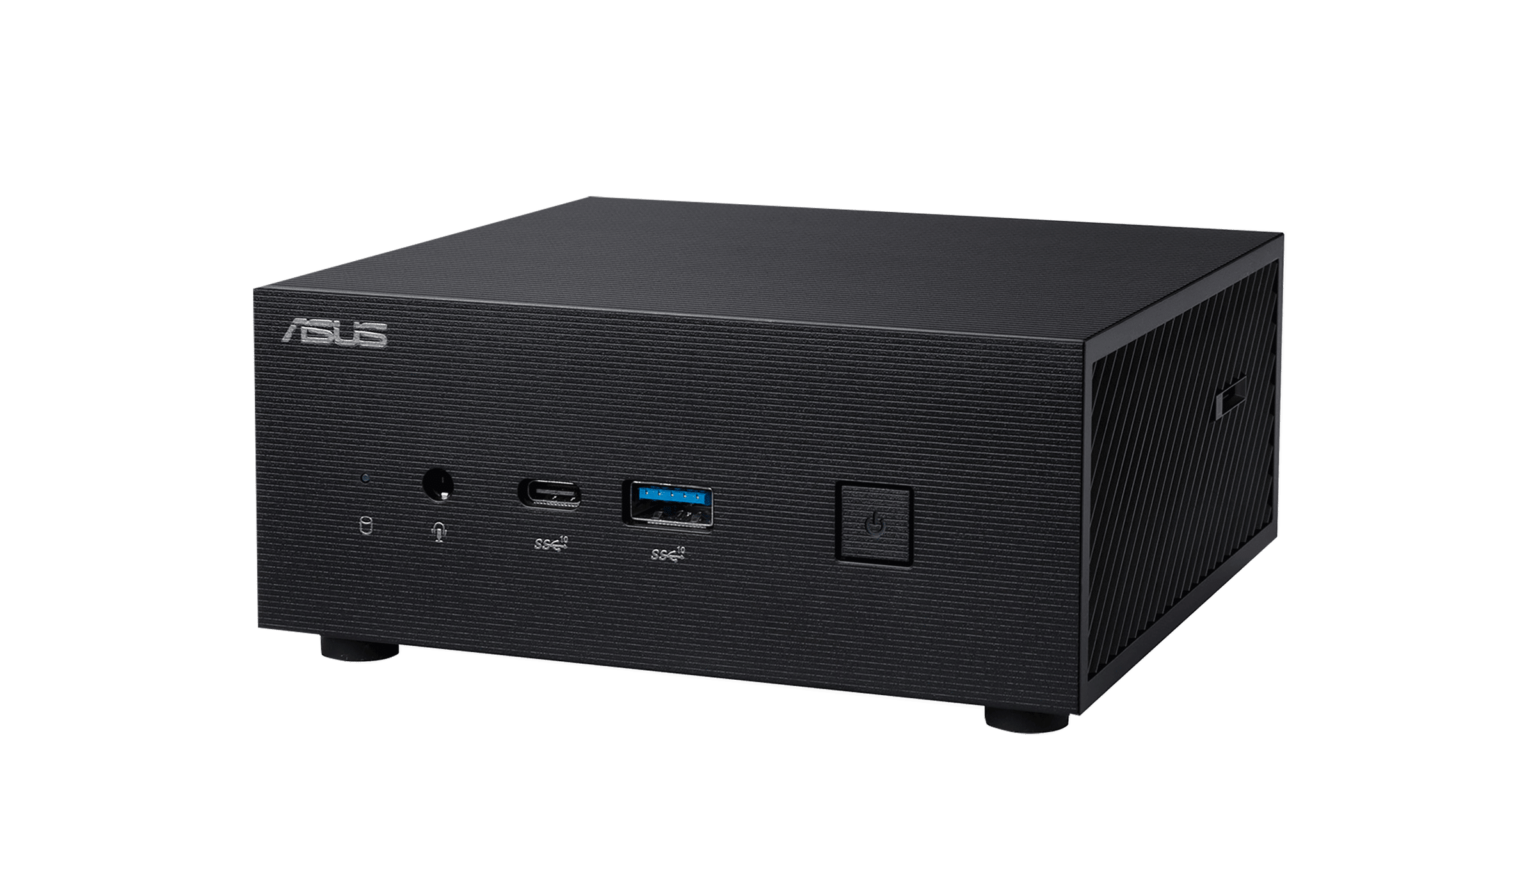 ASUS lance le puissant mini PC PN63 S1